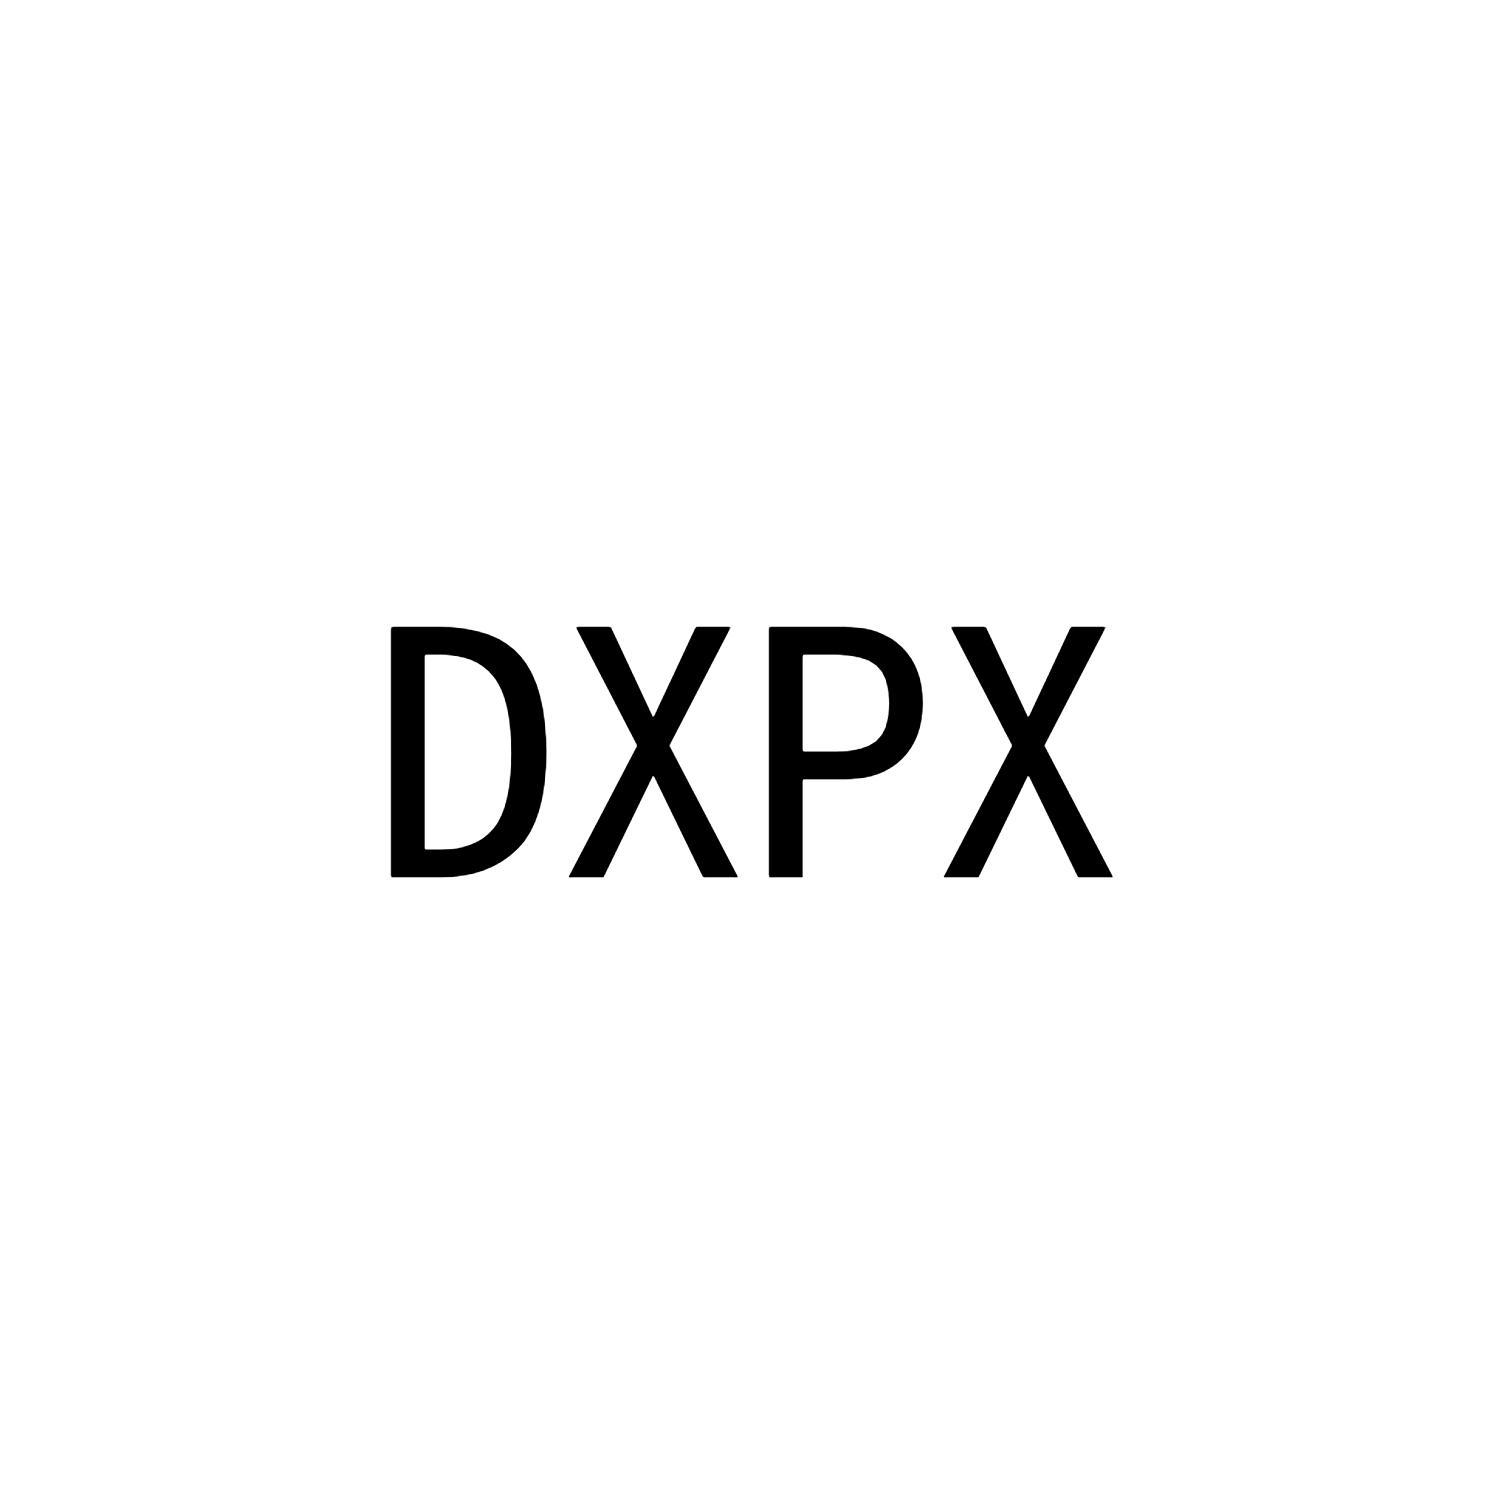 DXPX